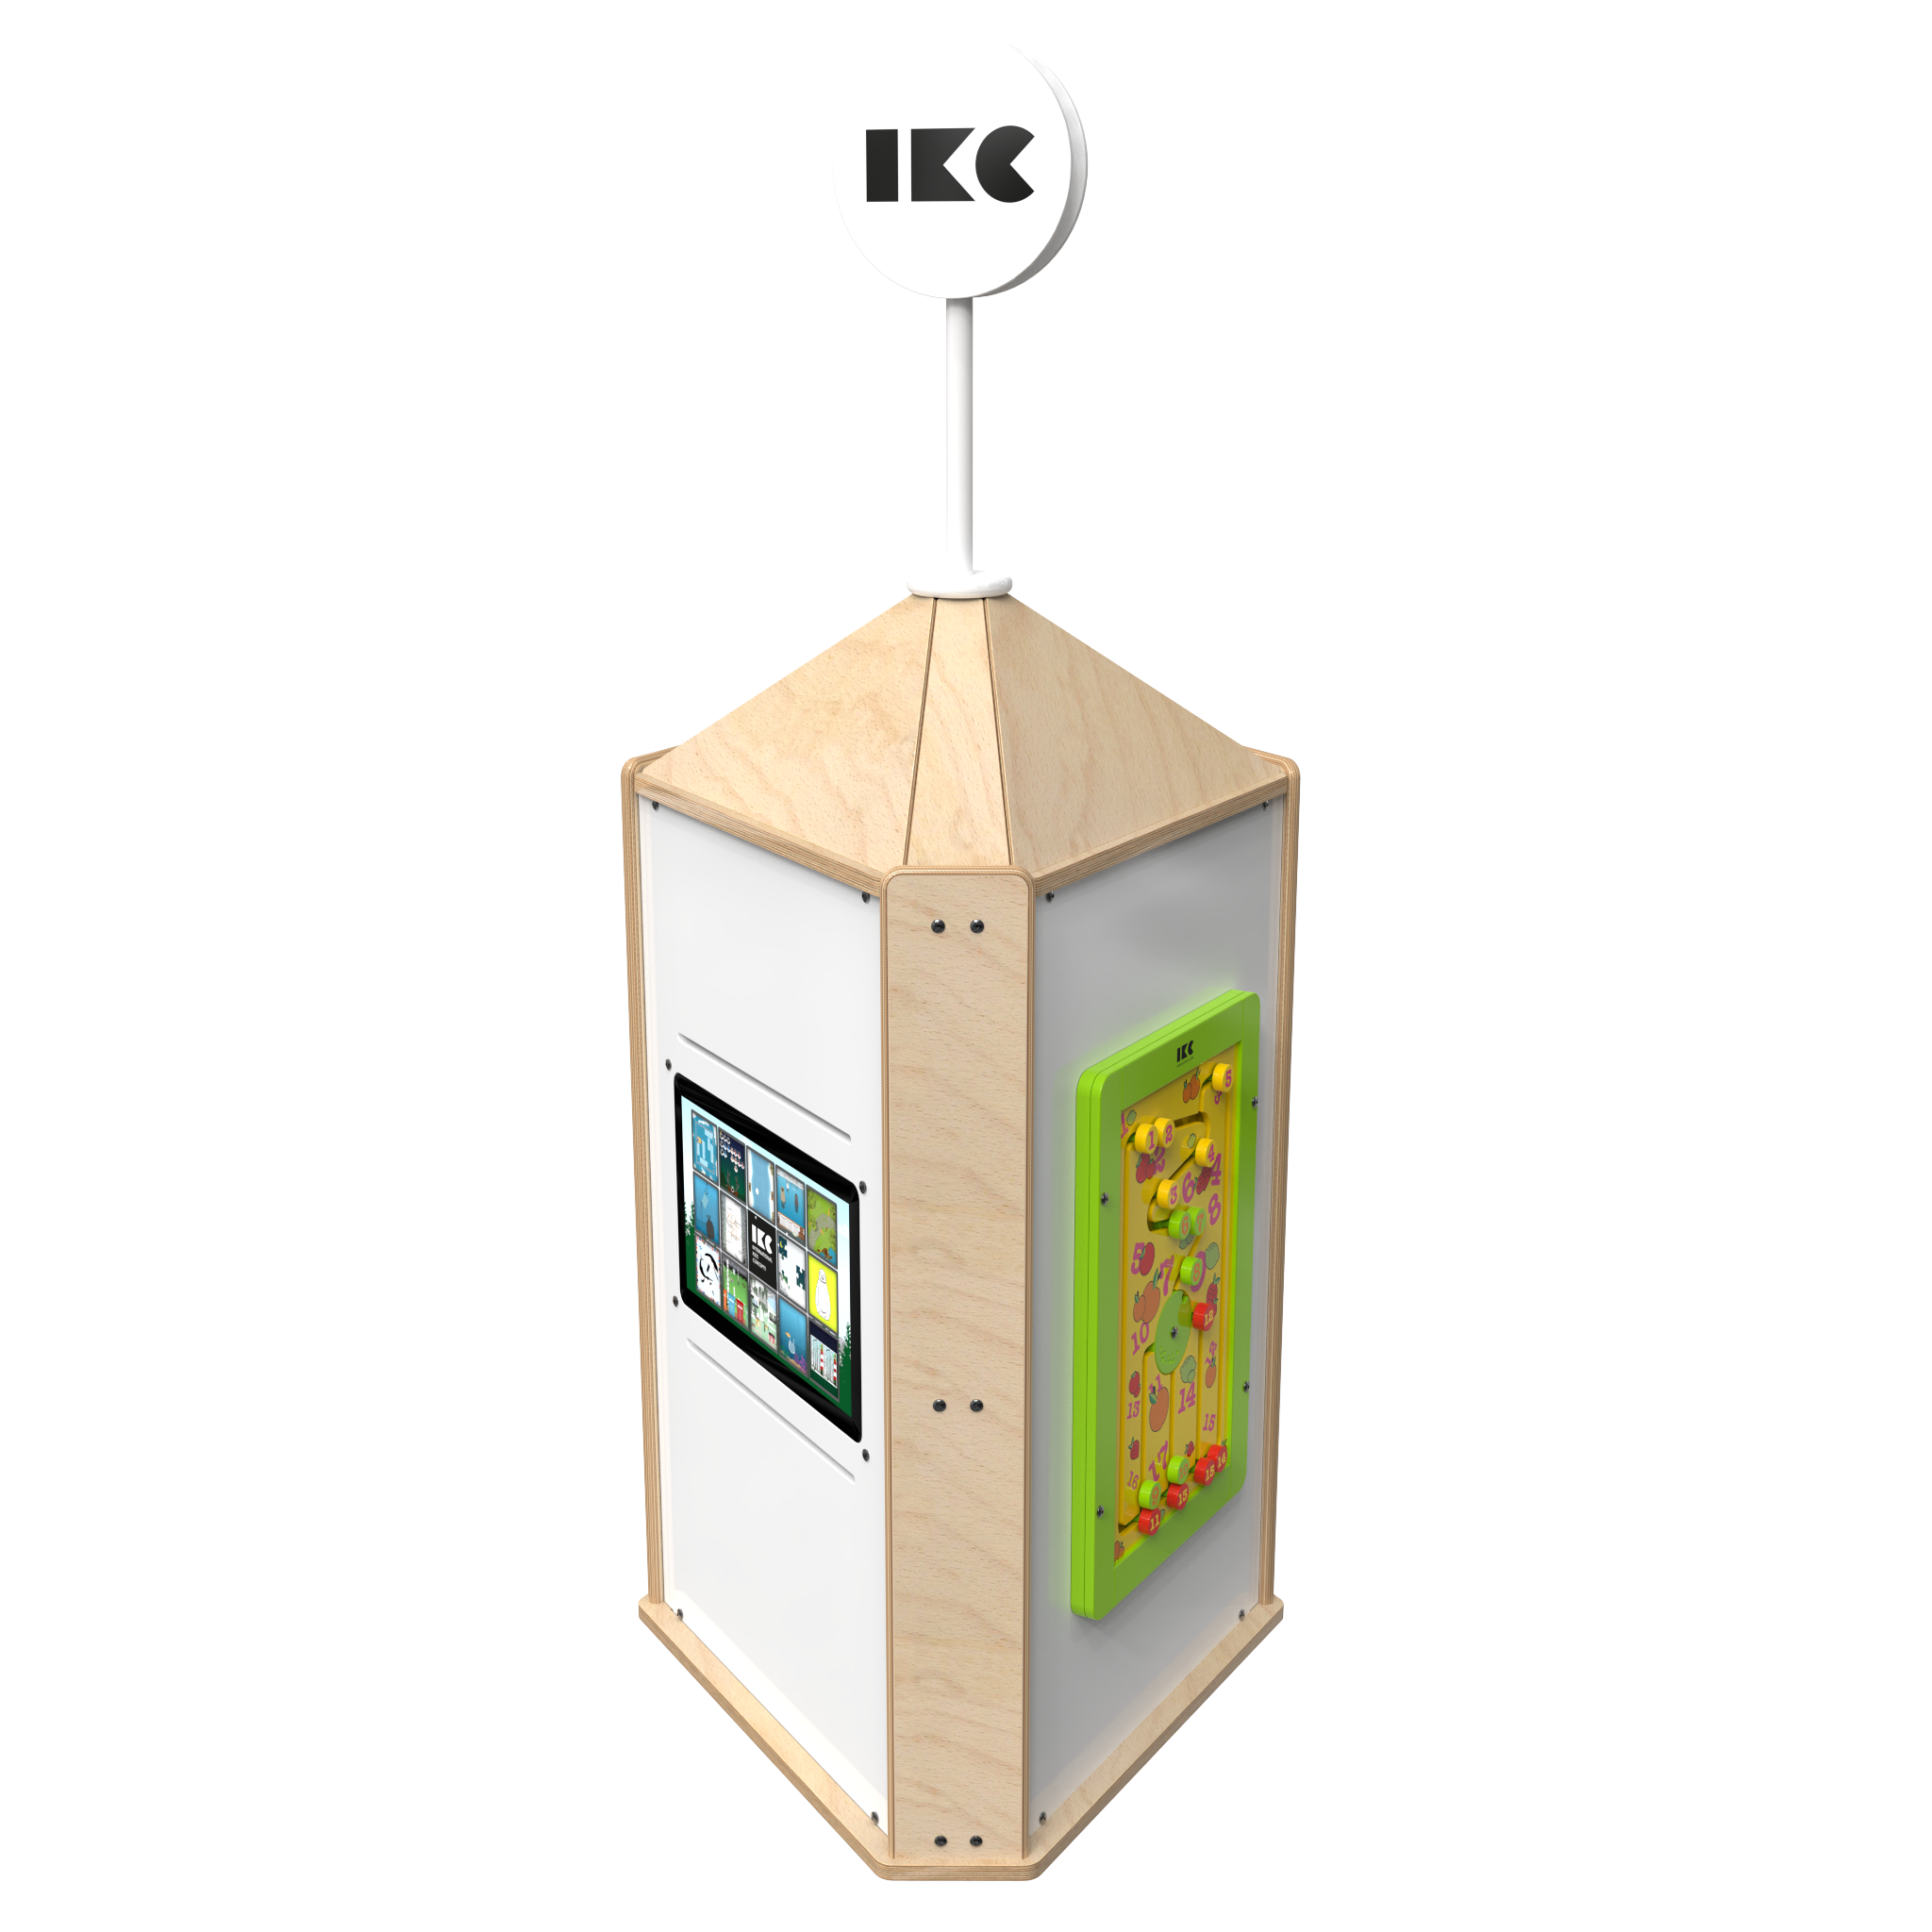 Speeltoren voor een kinderhoek met meerdere spellen interactief  | IKC speelsystemen